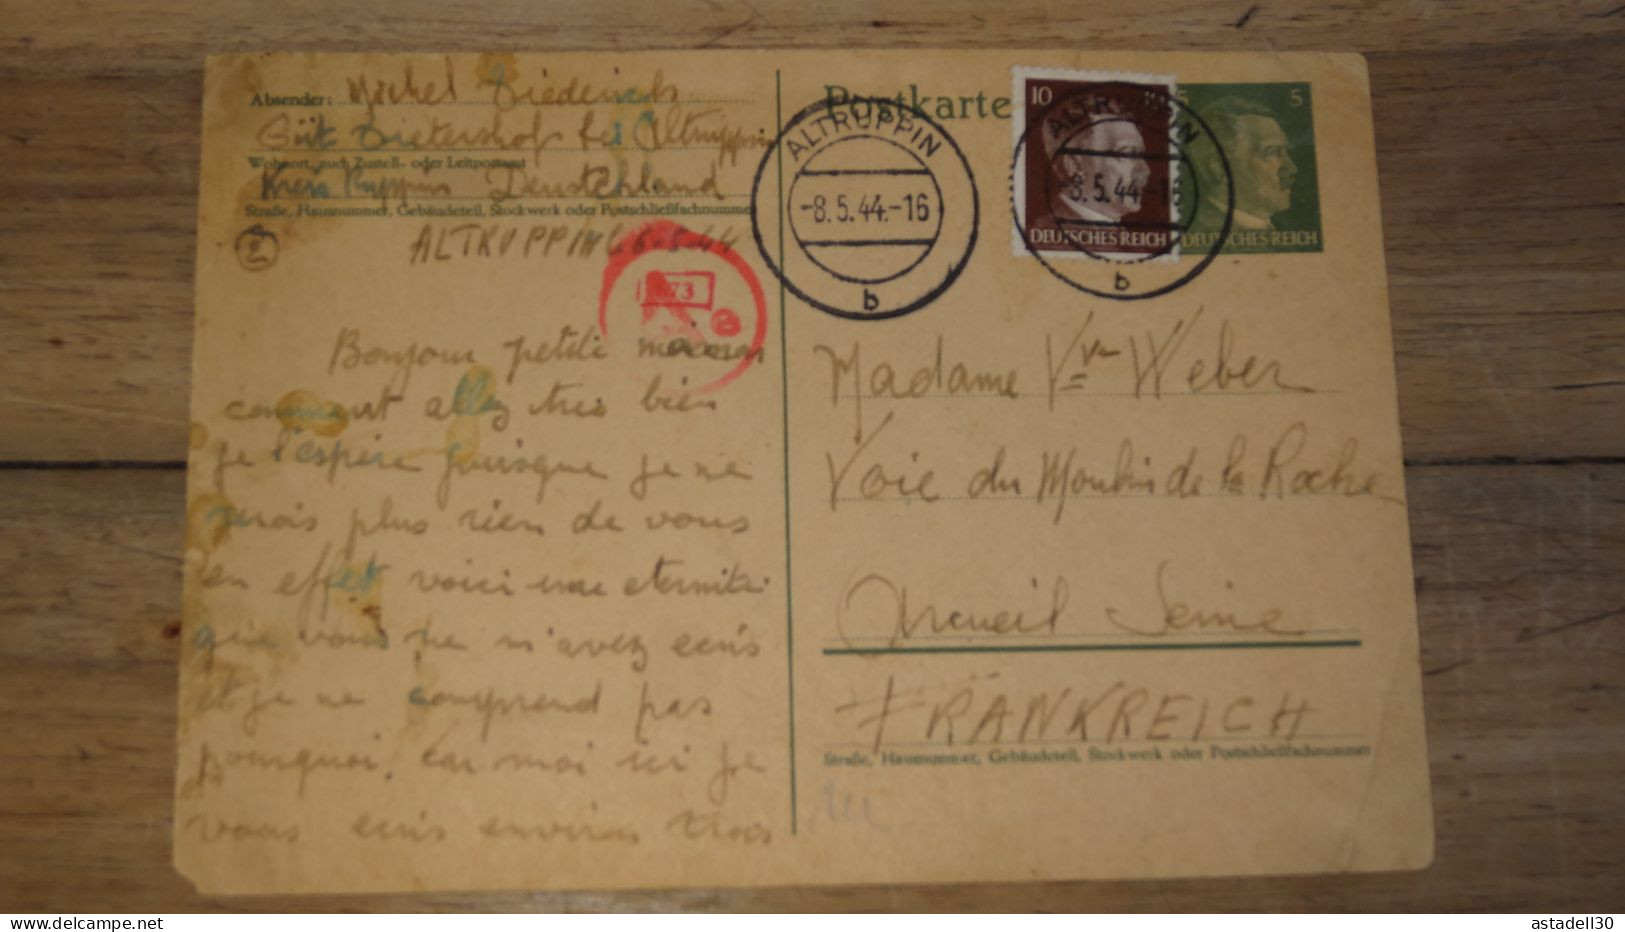 Entier Postal 5pf + Complement, DEUTSCHLAND, Altruppin 1944 ......... Boite1 ..... 240424-193 - Cartas & Documentos